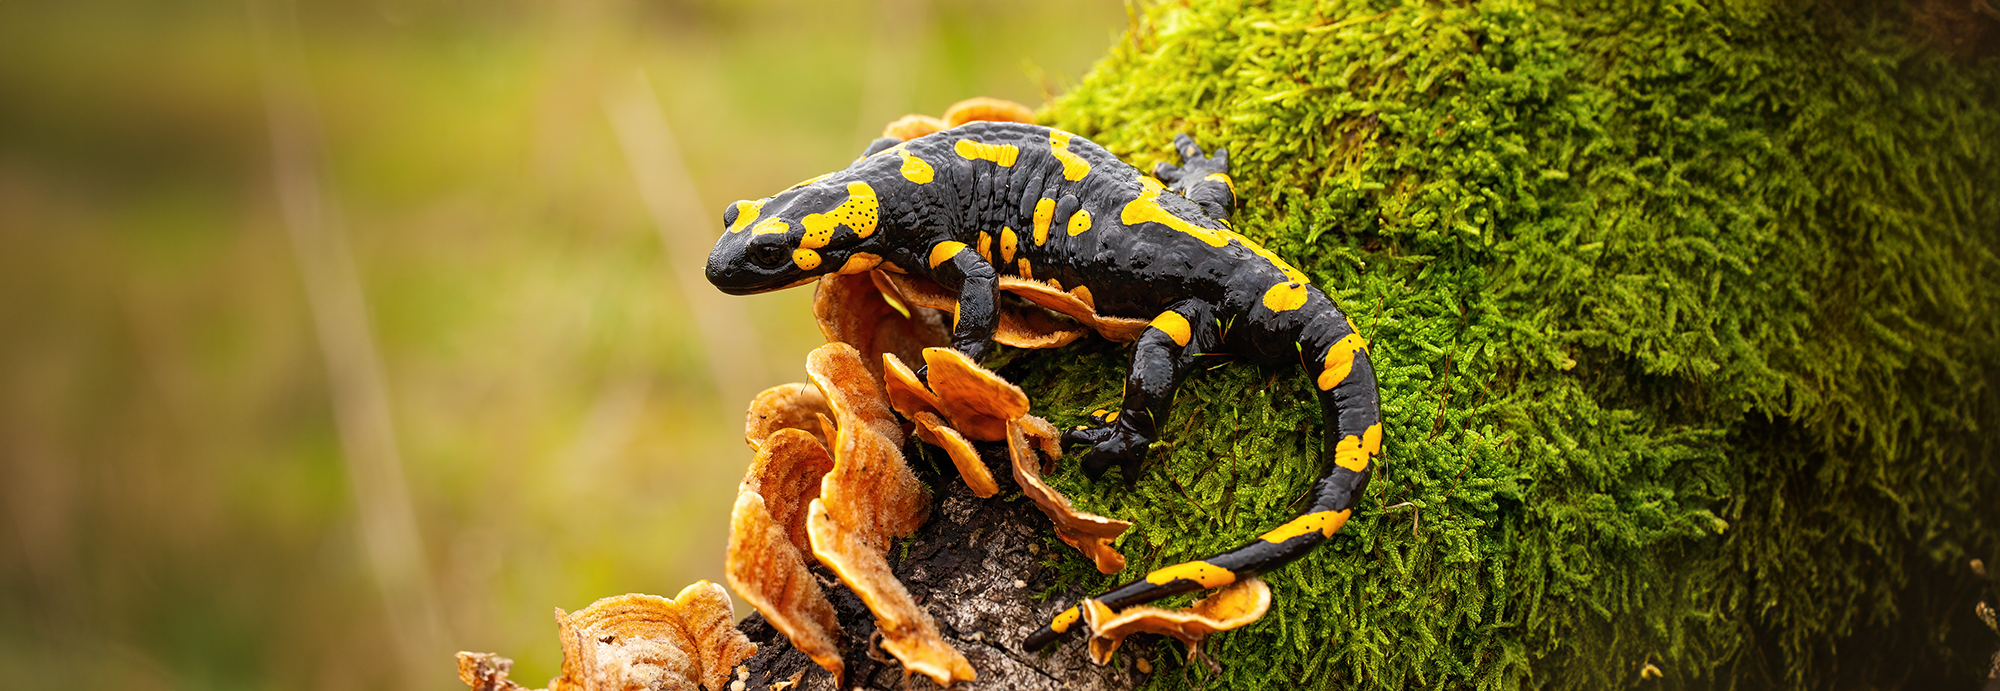 Une salamandre photographiée sur une branche d'arbre. © WildMedia, Adobe Stock   